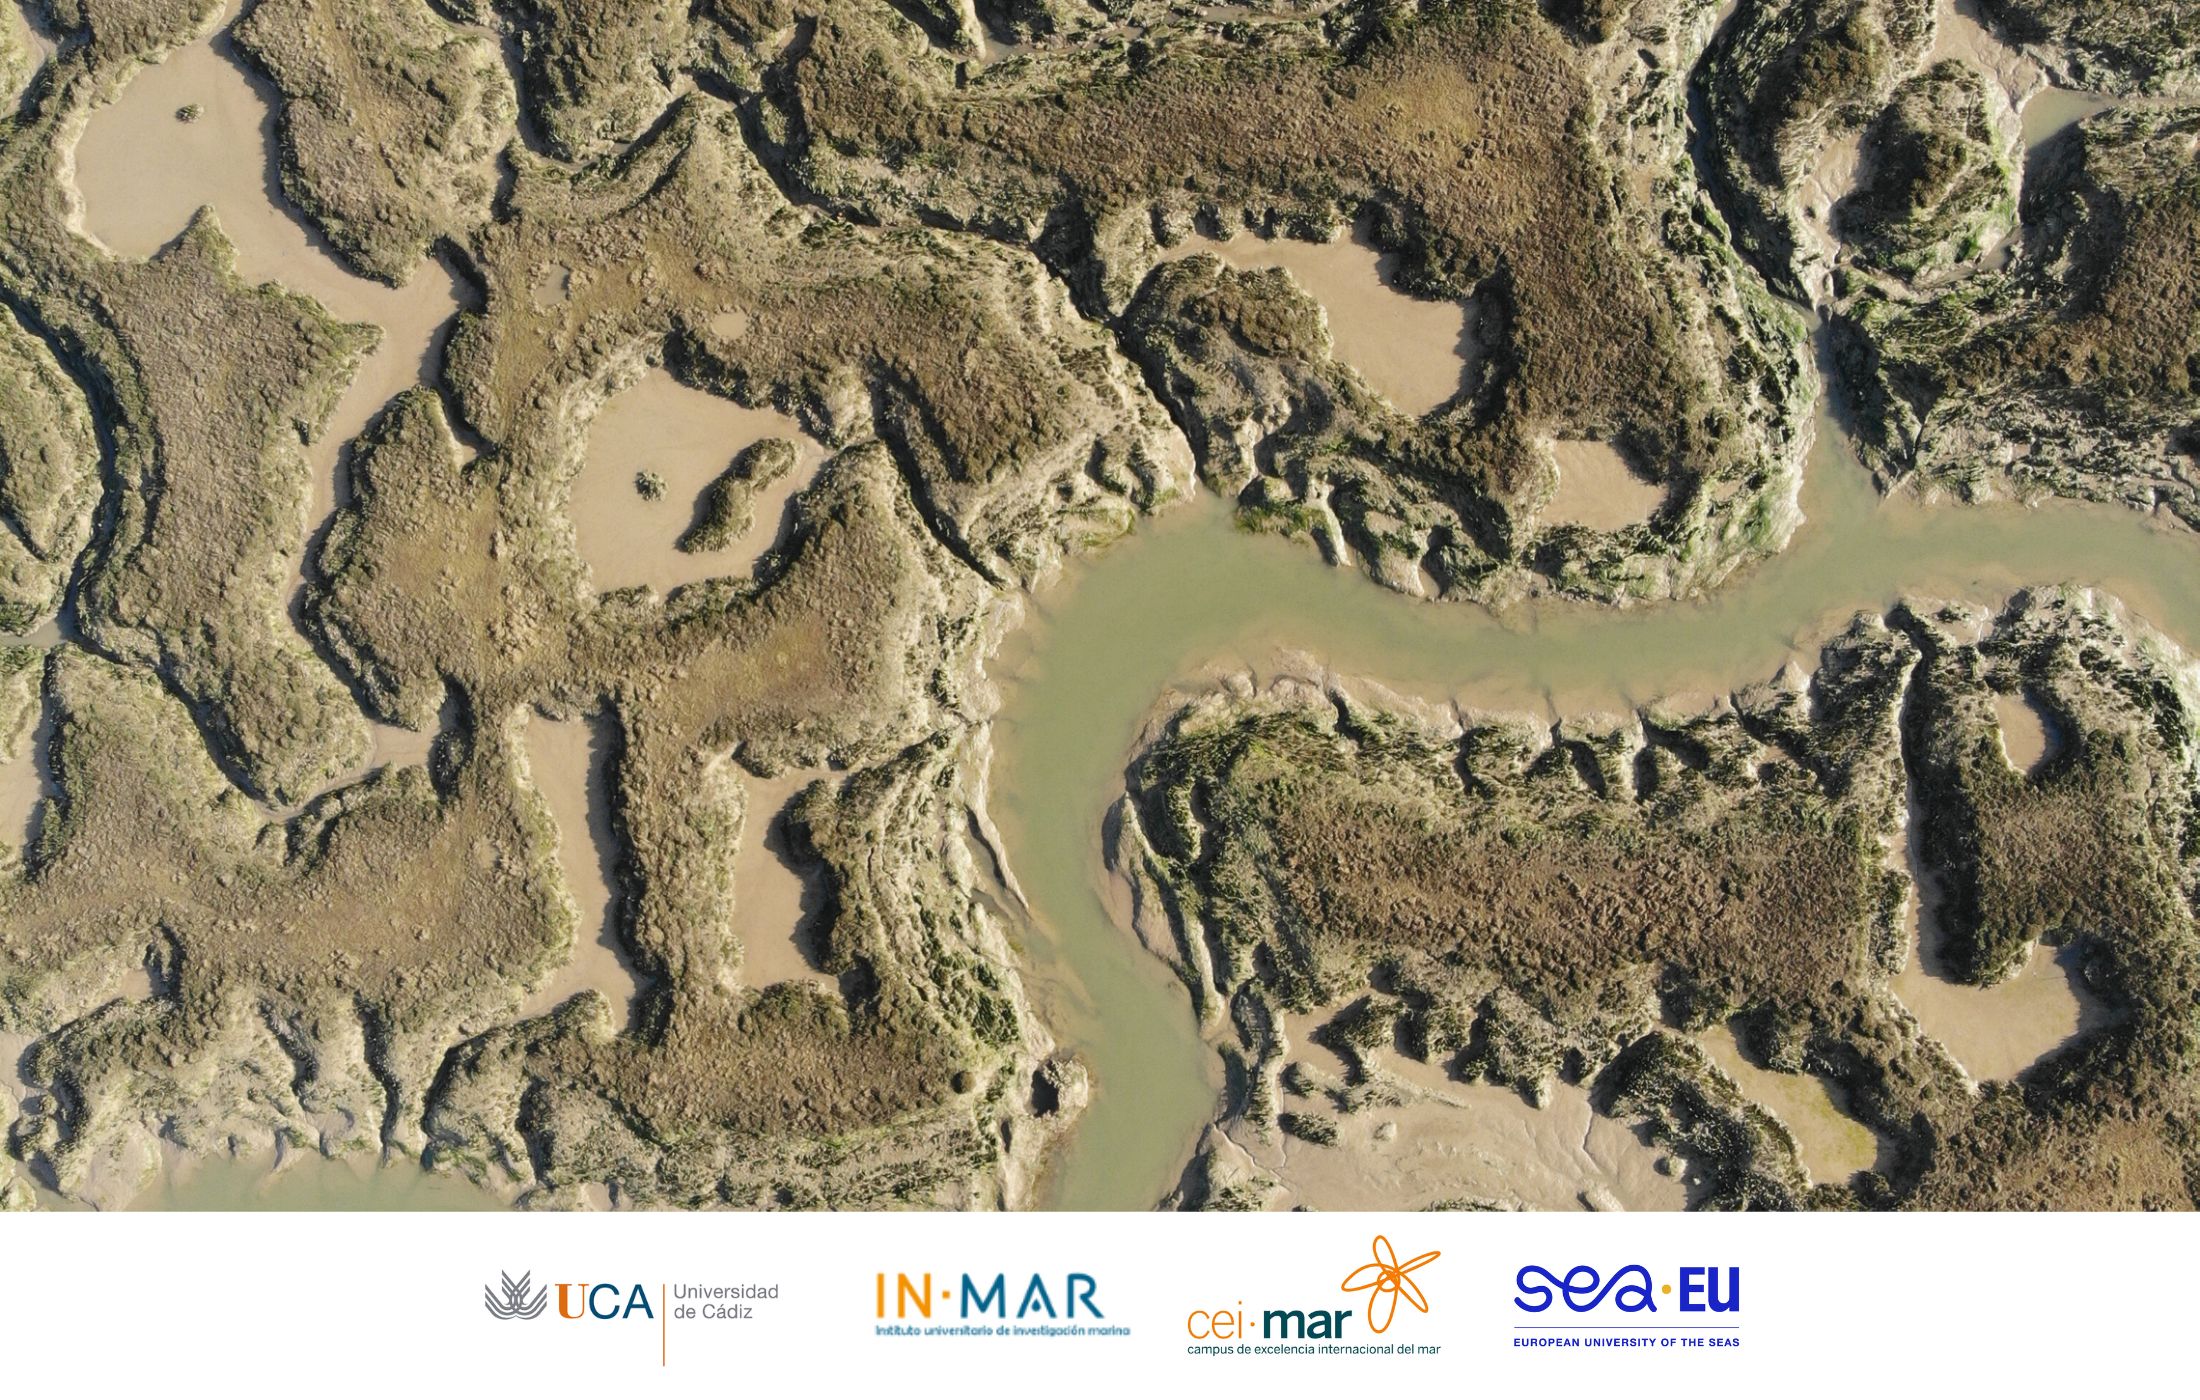 III Jornada de Investigación en el Parque Natural Bahía de Cádiz con la participación de investigadores del INMAR-UCA